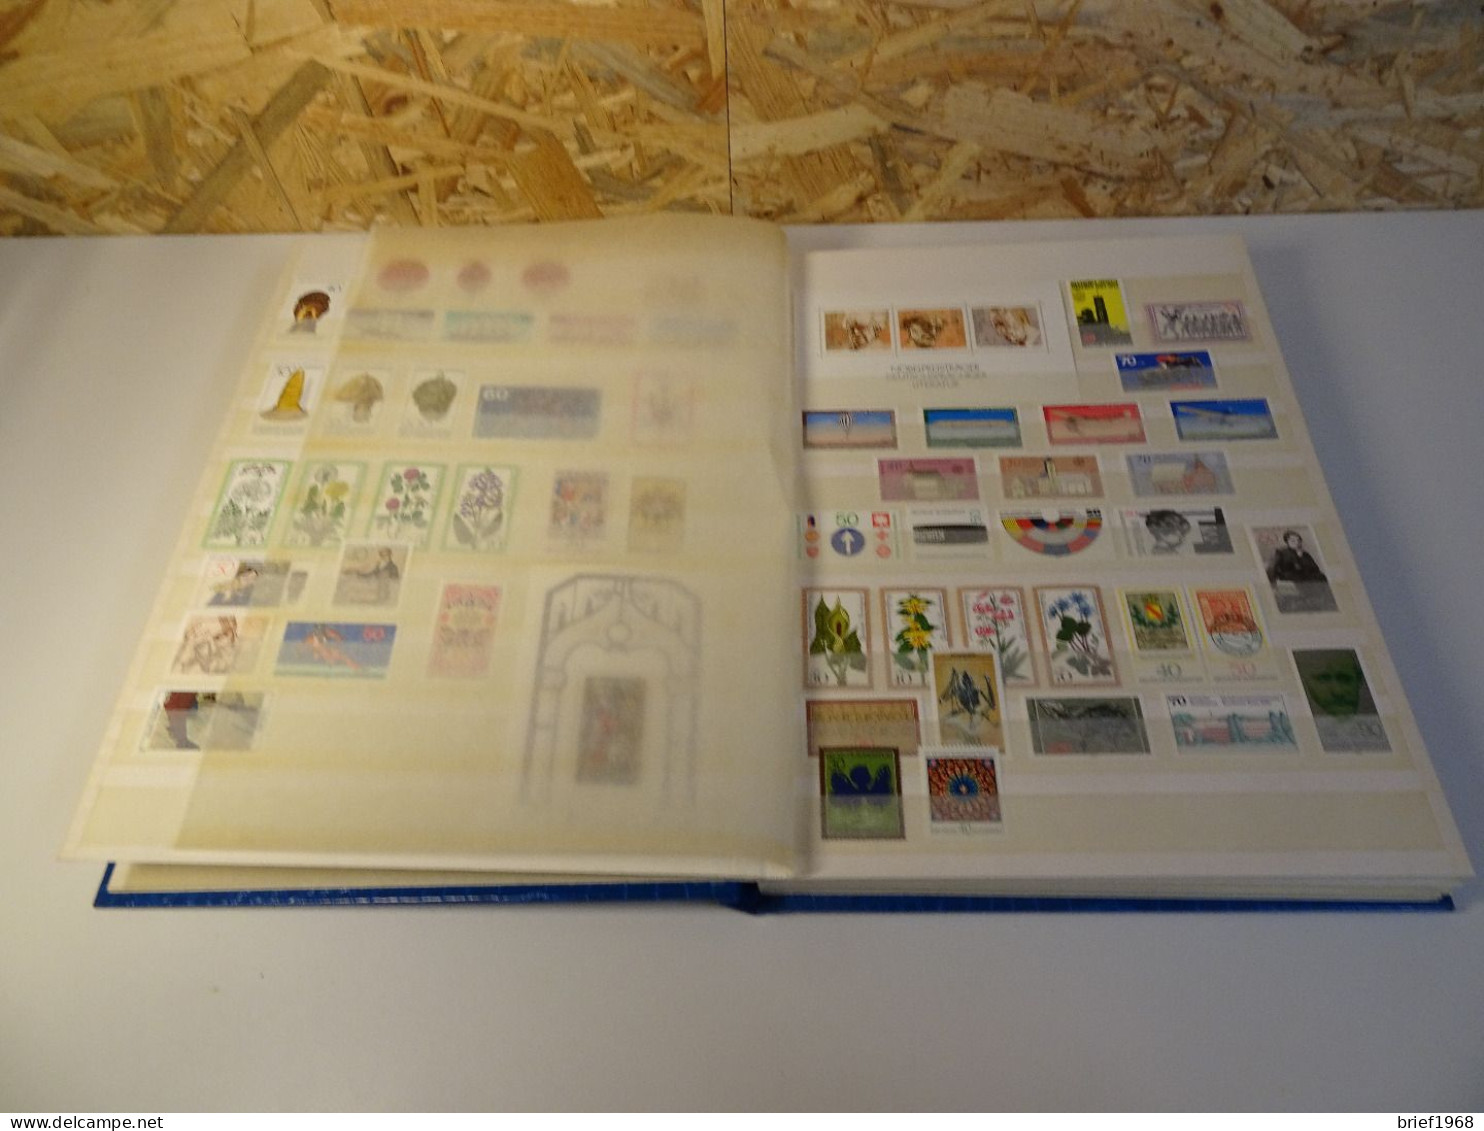 Bund 1975-1992 Postfrisch Fast Komplett (26470) - Privatpostkarten - Gebraucht